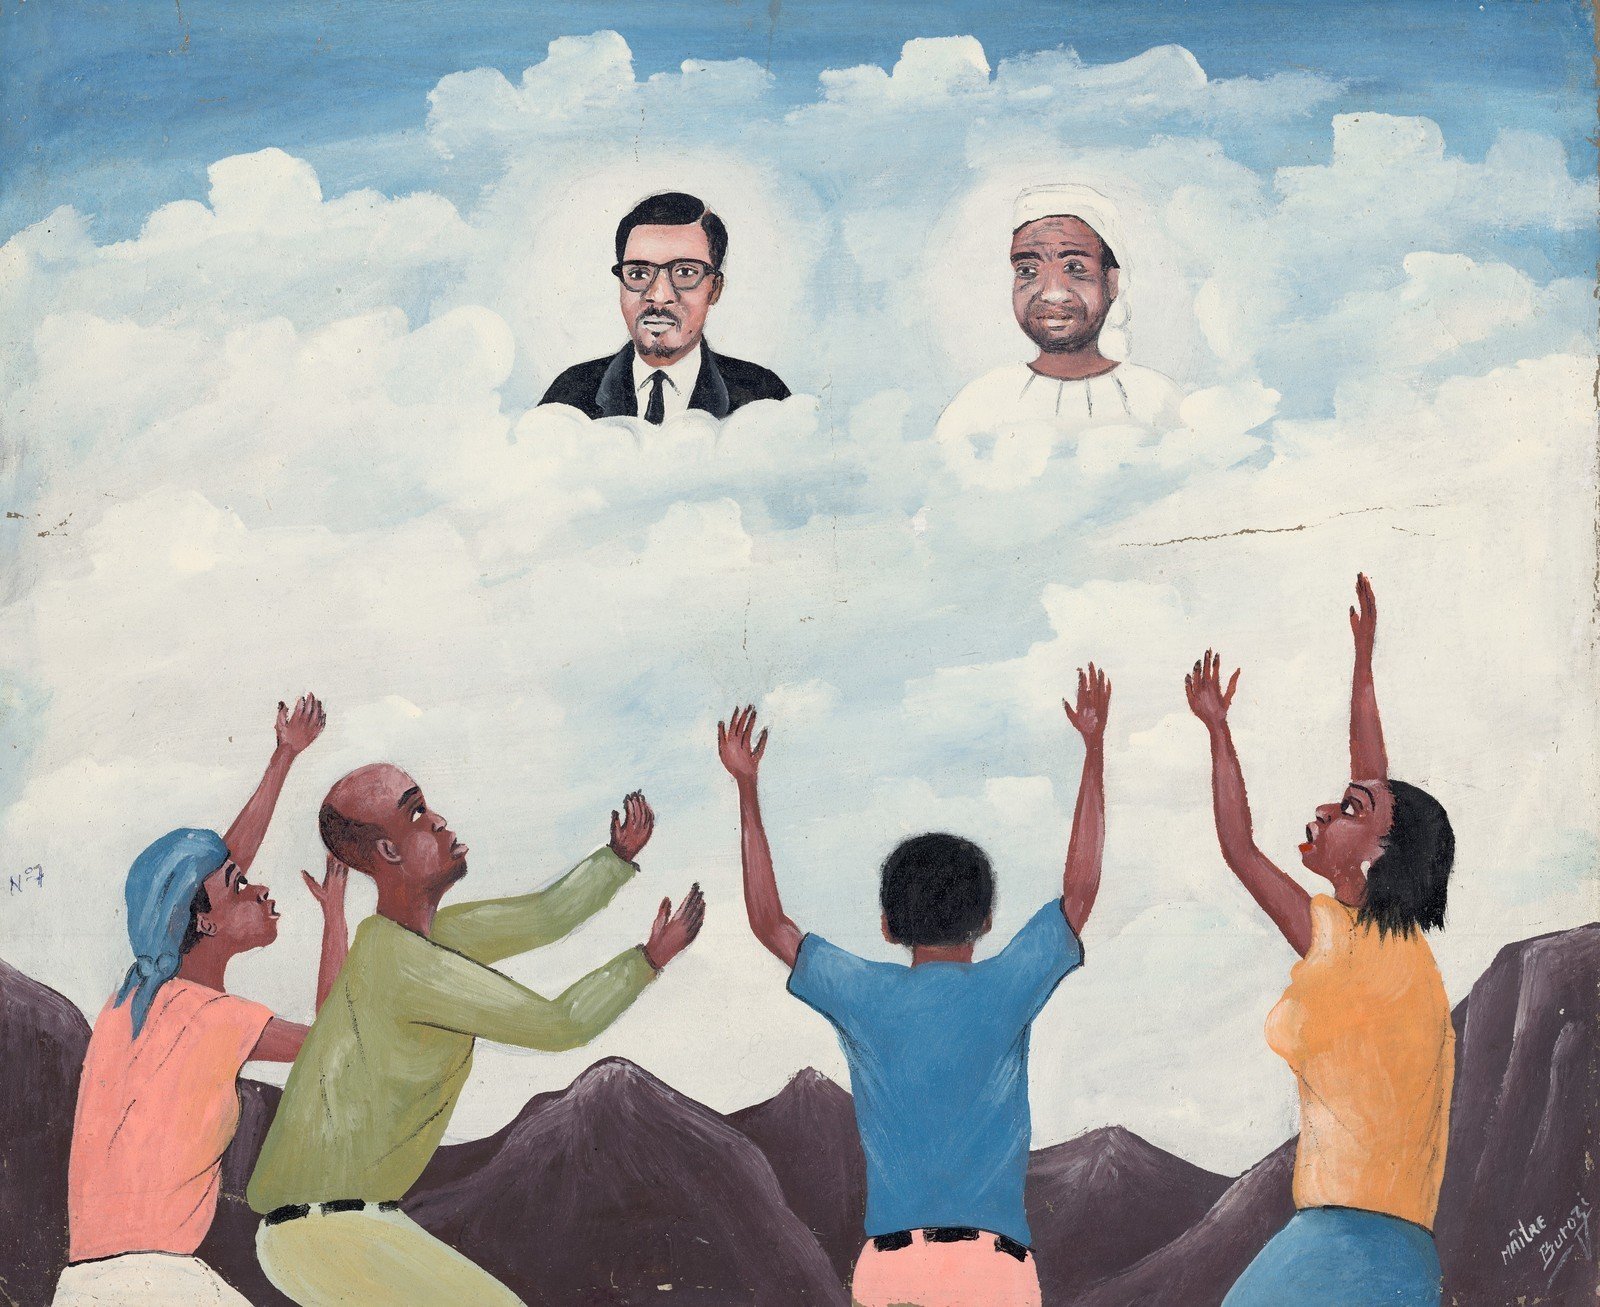 Бурози. Лумумба и Симон Кимбангу в облаках. Лумумбаши, Верхняя Катанга, 1997. Холст, масло. Коллекция Королевского музея Центральной Африки, Тервюрен.